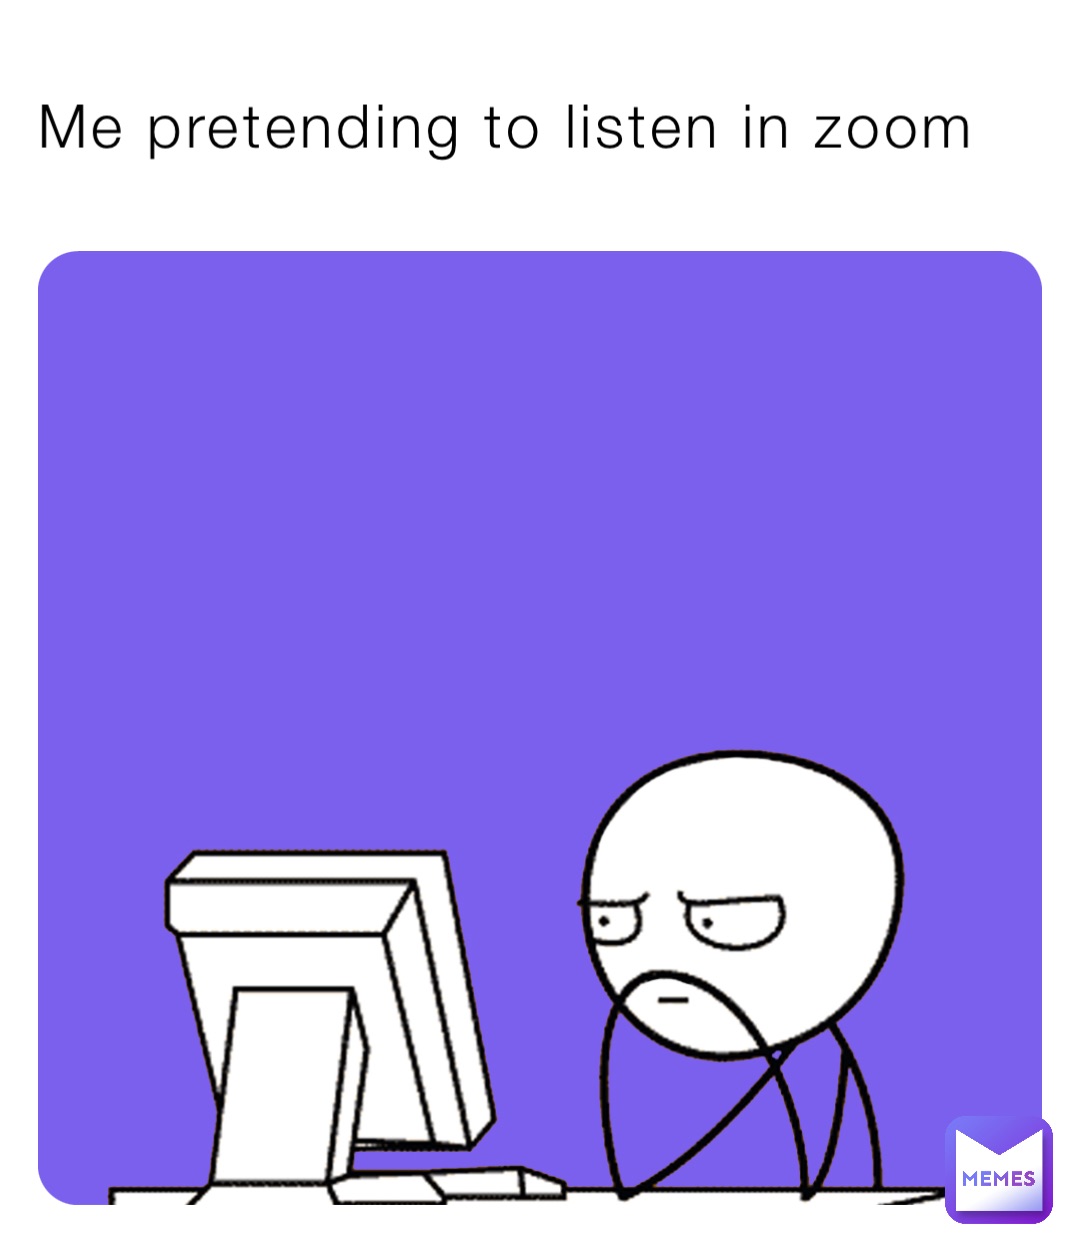 Me pretending to listen in zoom